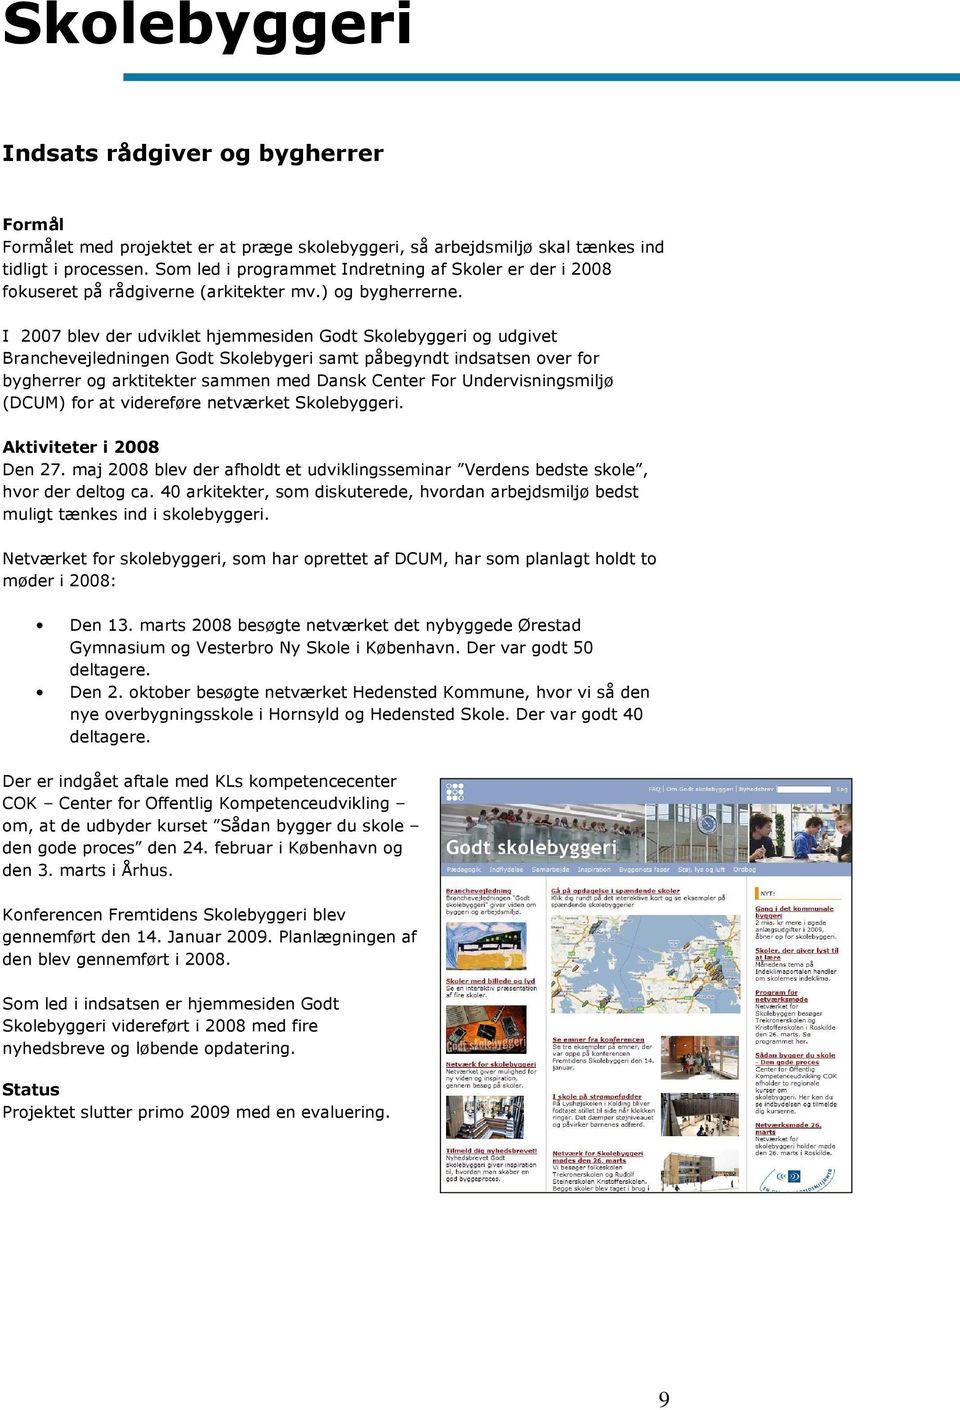 I 2007 blev der udviklet hjemmesiden Godt Skolebyggeri og udgivet Branchevejledningen Godt Skolebygeri samt påbegyndt indsatsen over for bygherrer og arktitekter sammen med Dansk Center For